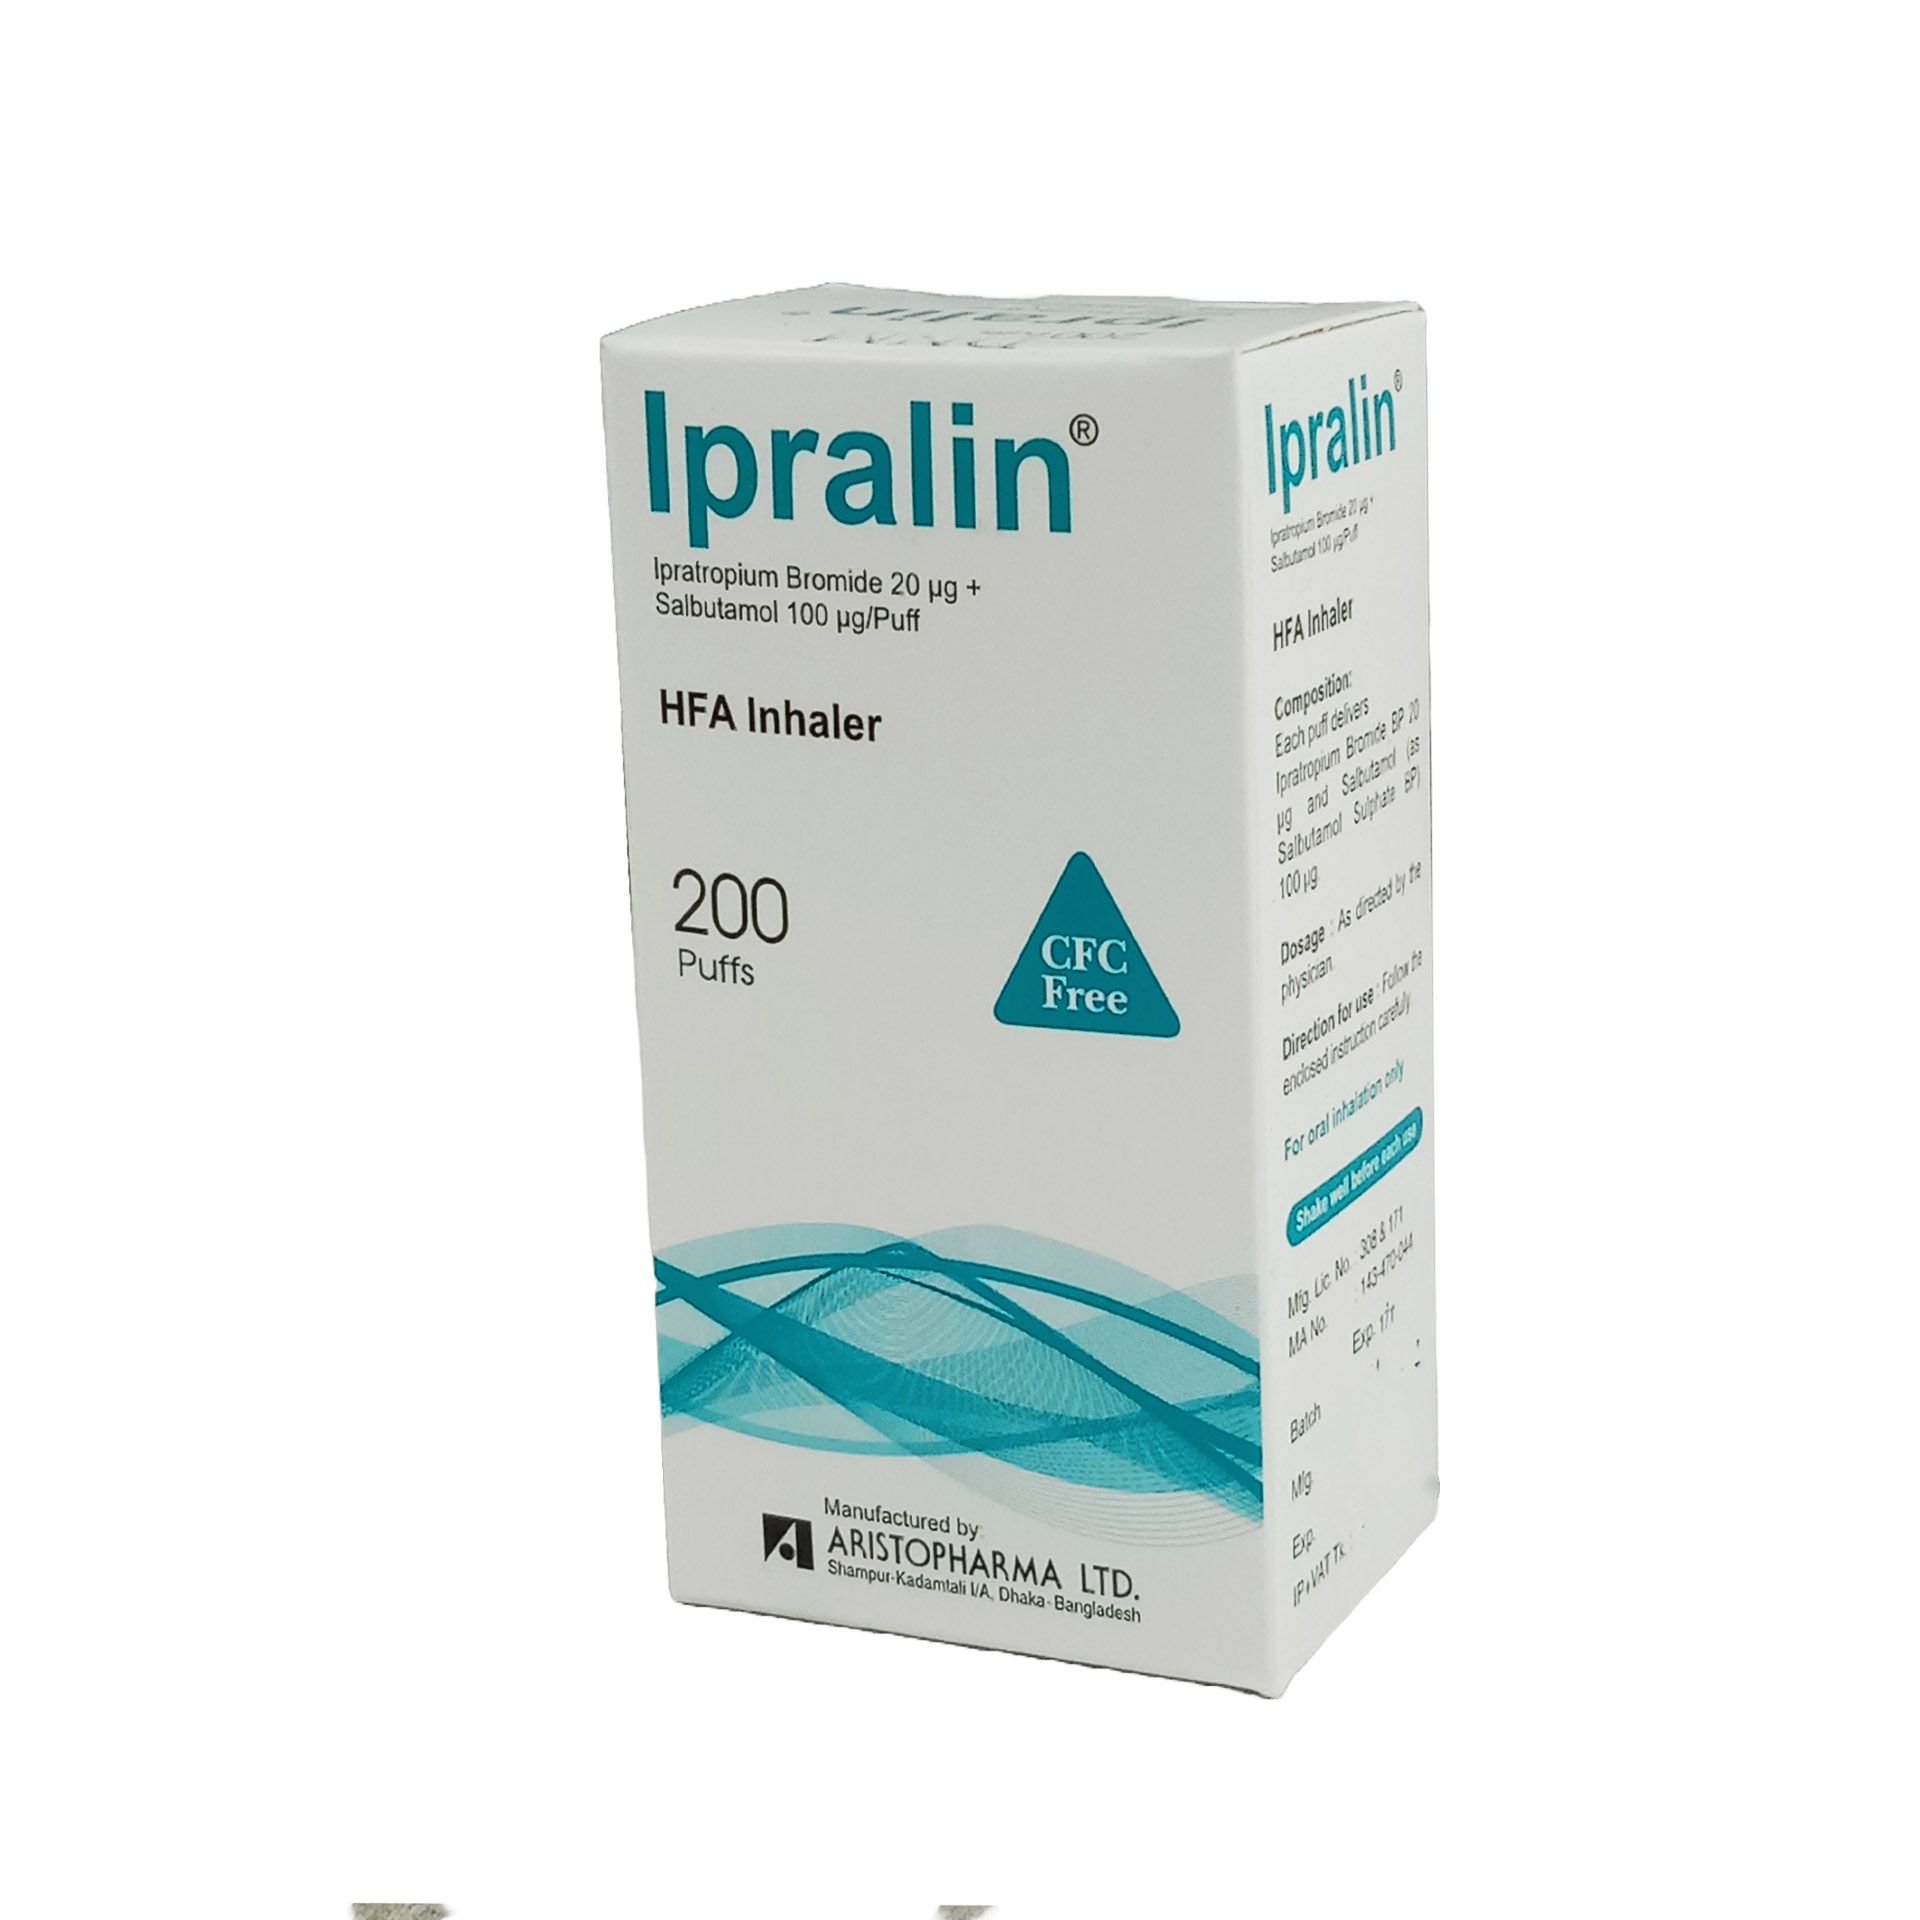 Ipralin HFA 20mcg+100mcg/puff Inhaler